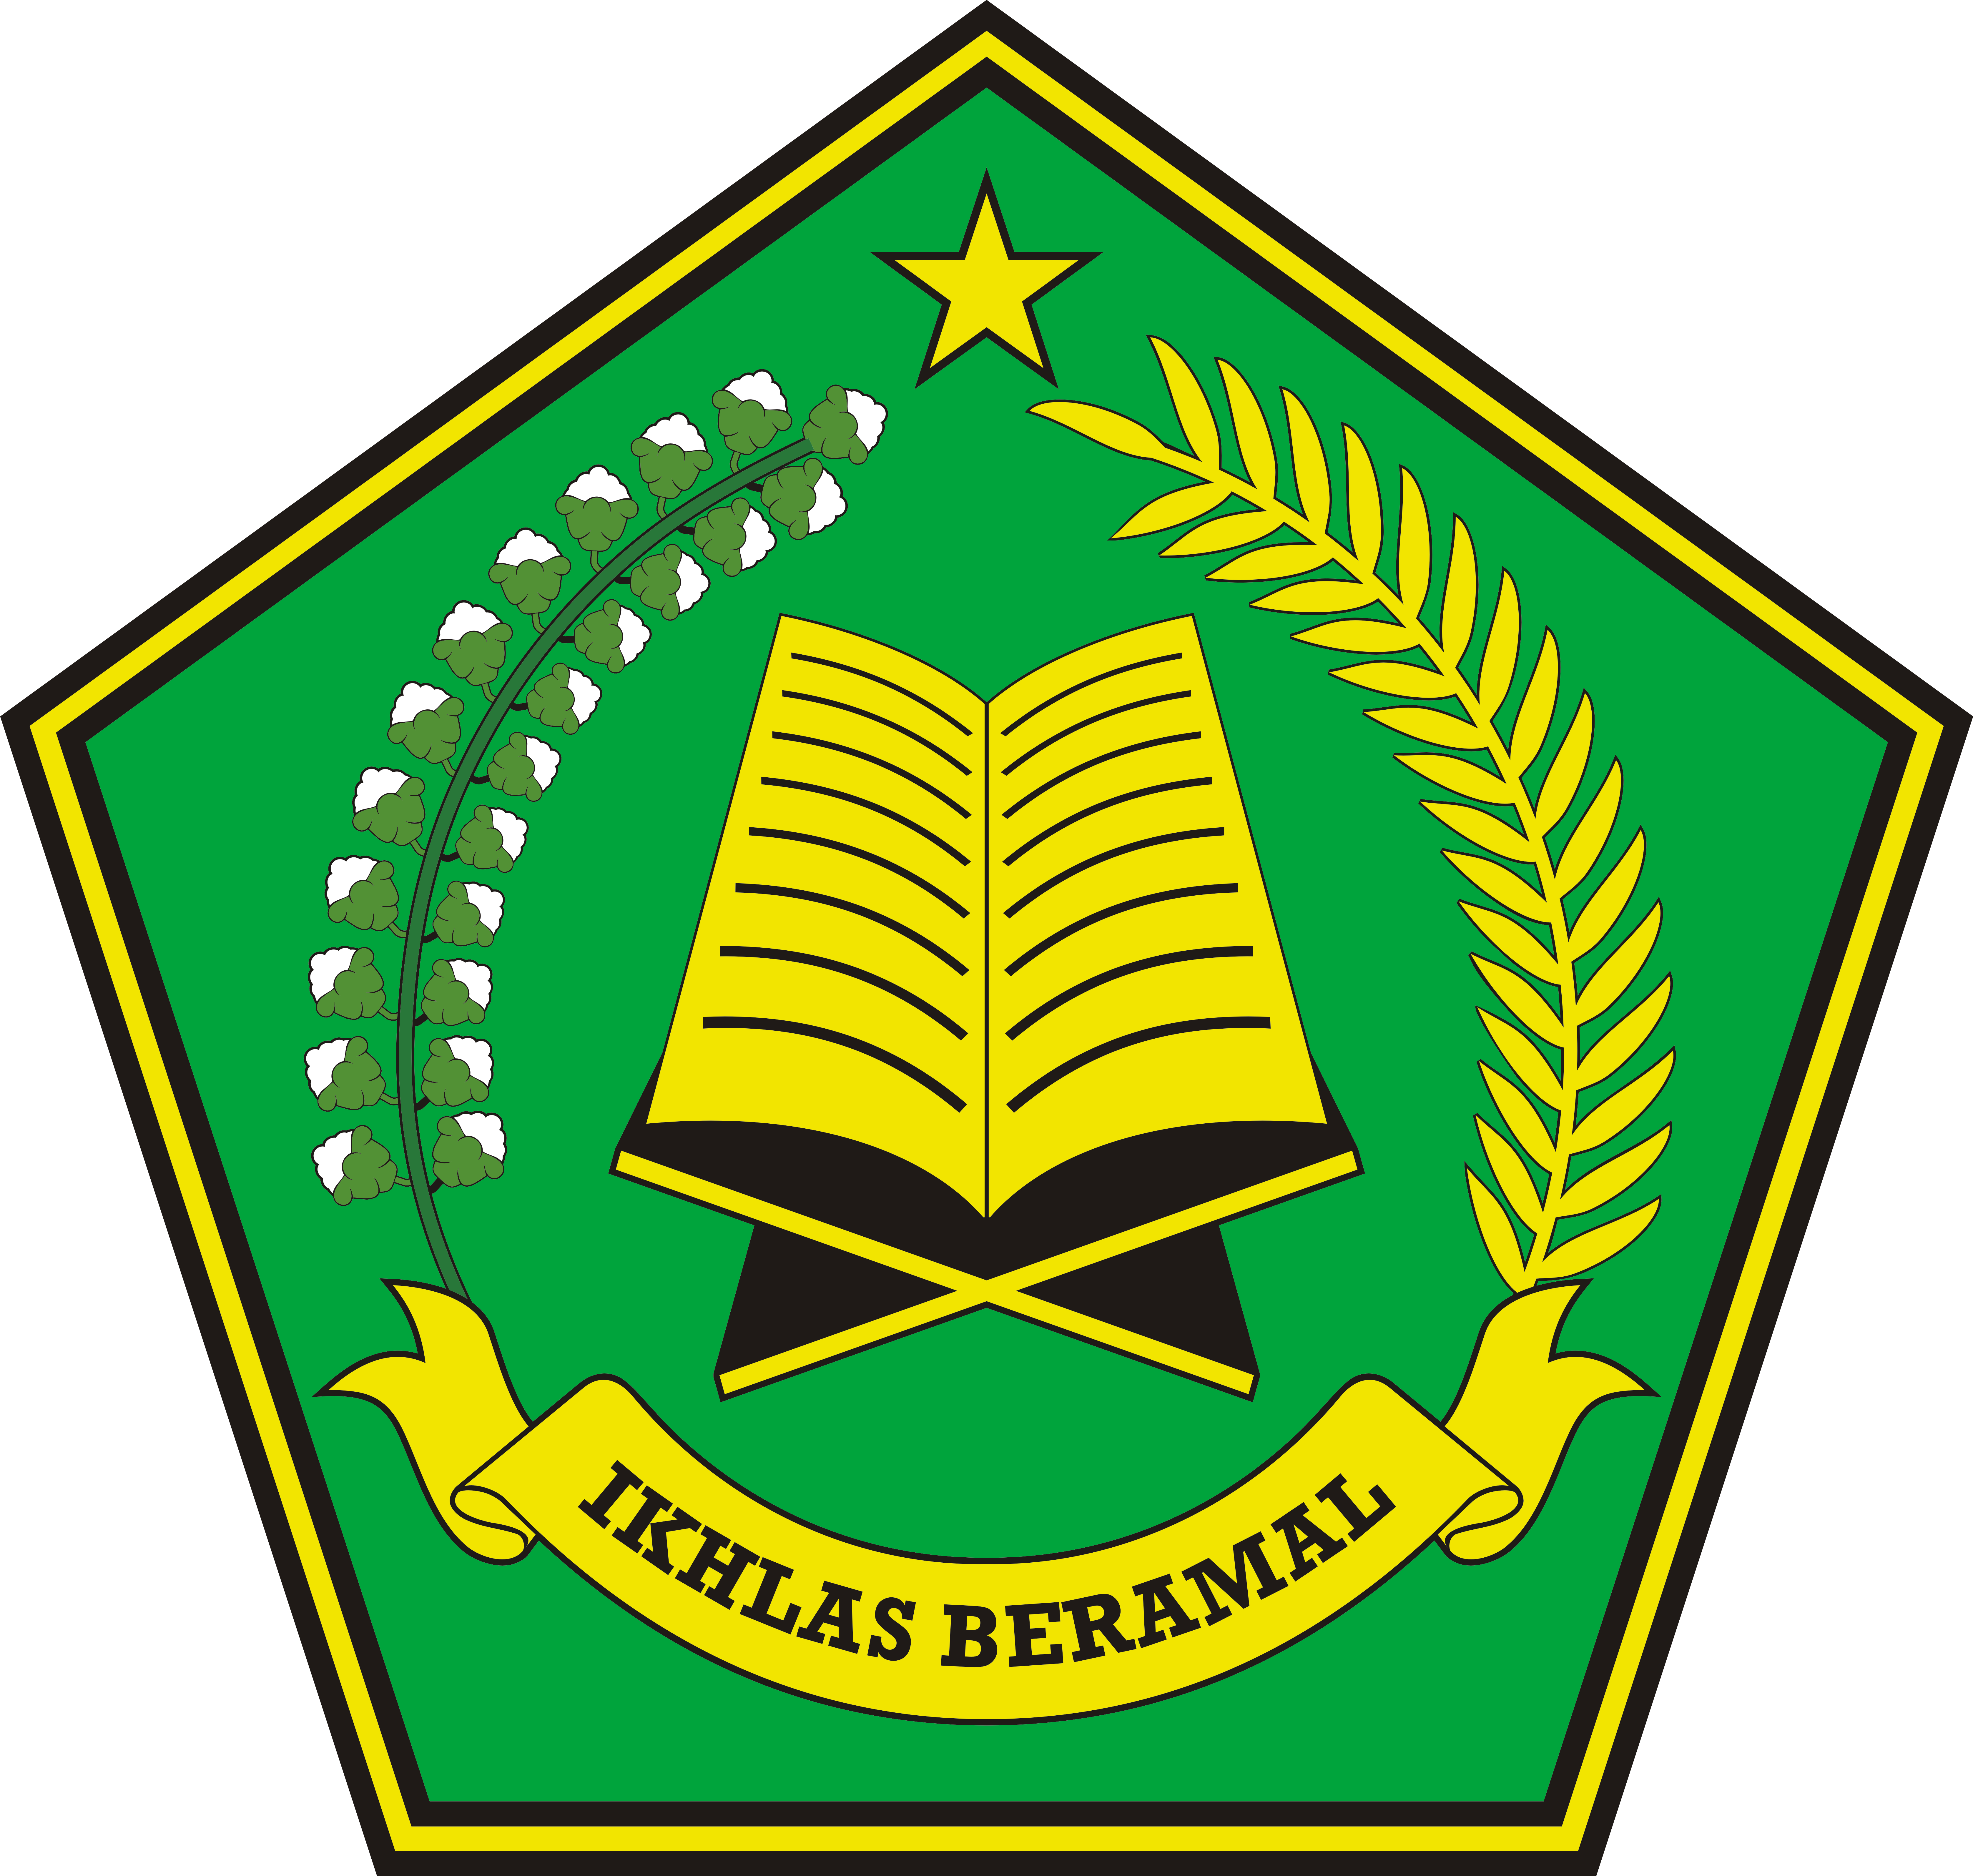 Logo ikhlas Beramal PNG images And Icons Free Download - Free